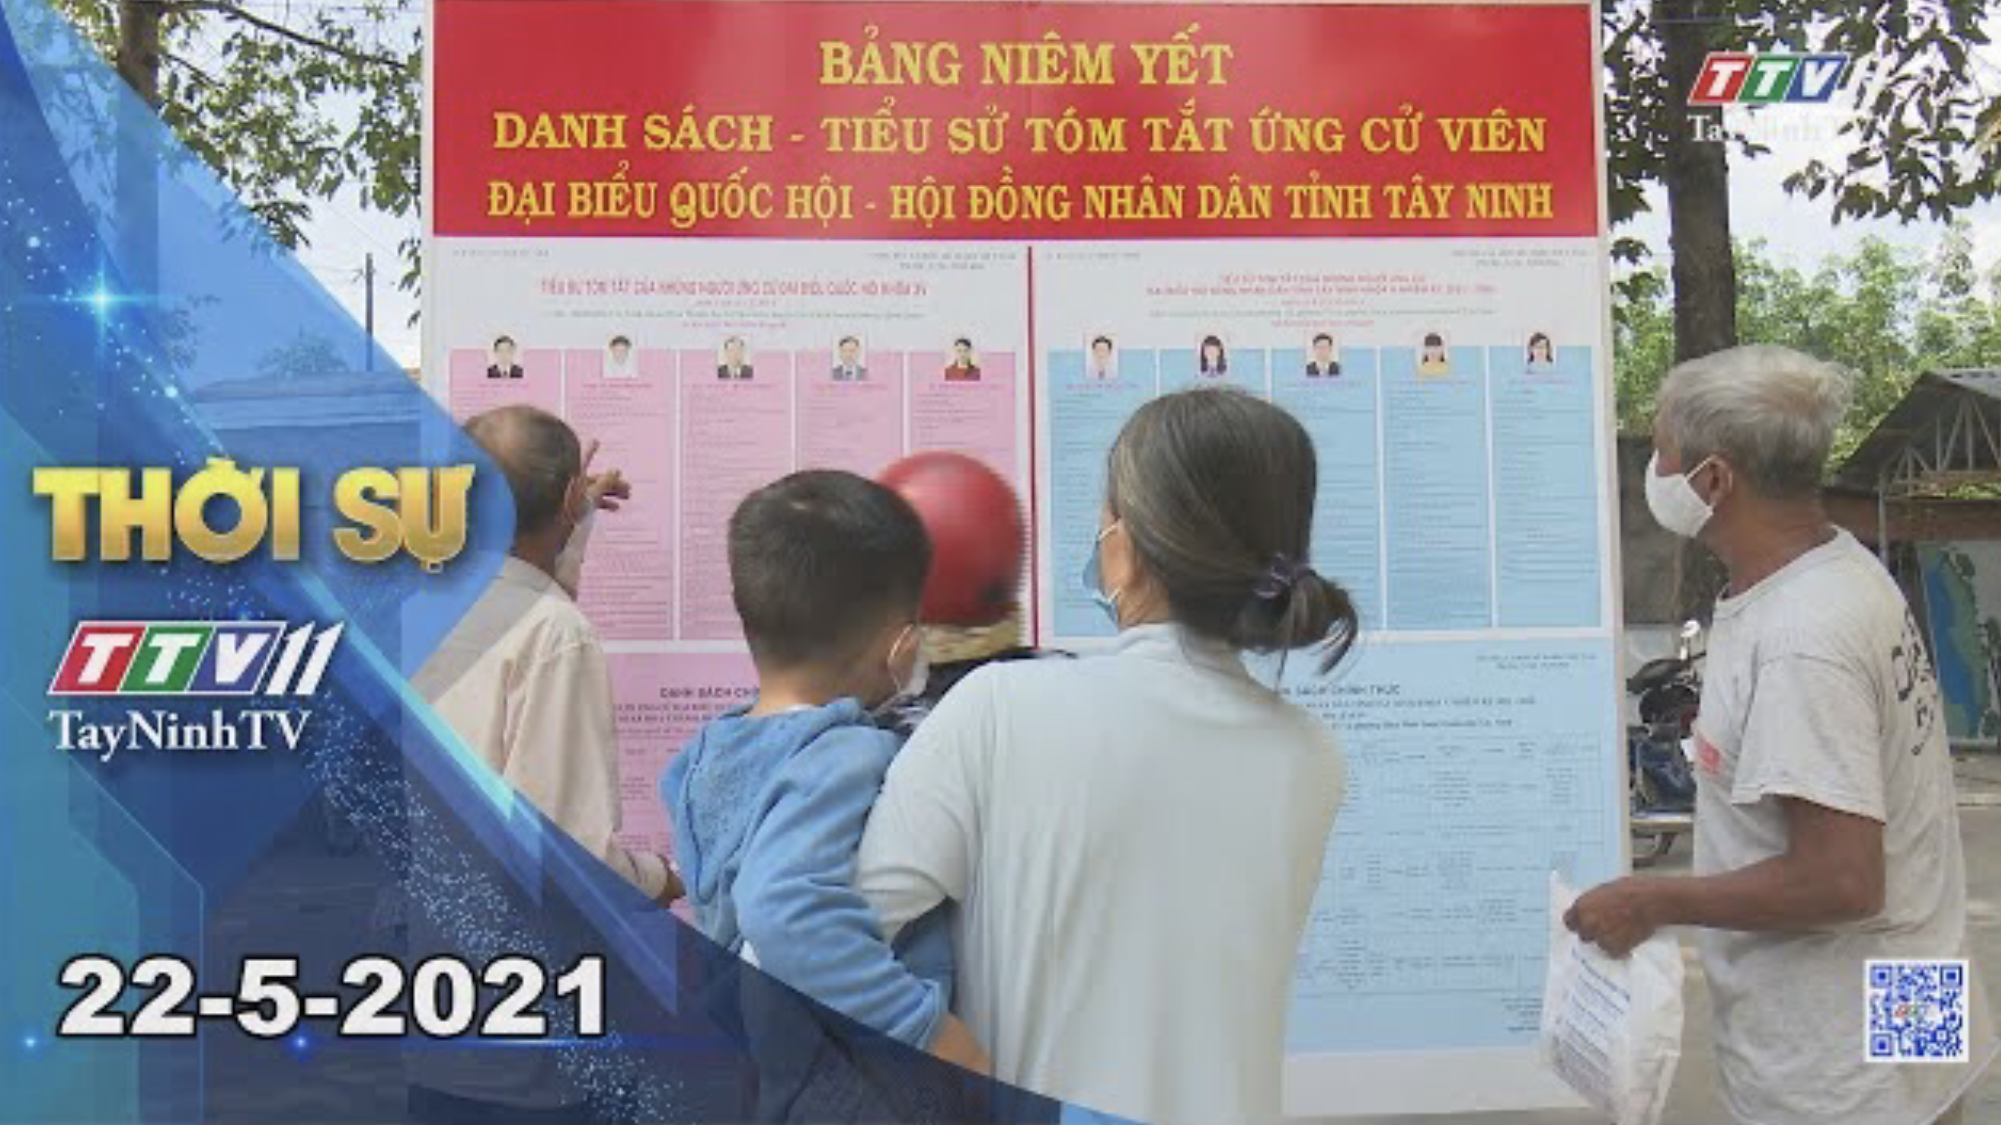 Thời sự Tây Ninh 22-5-2021 | Tin tức hôm nay | TayNinhTV